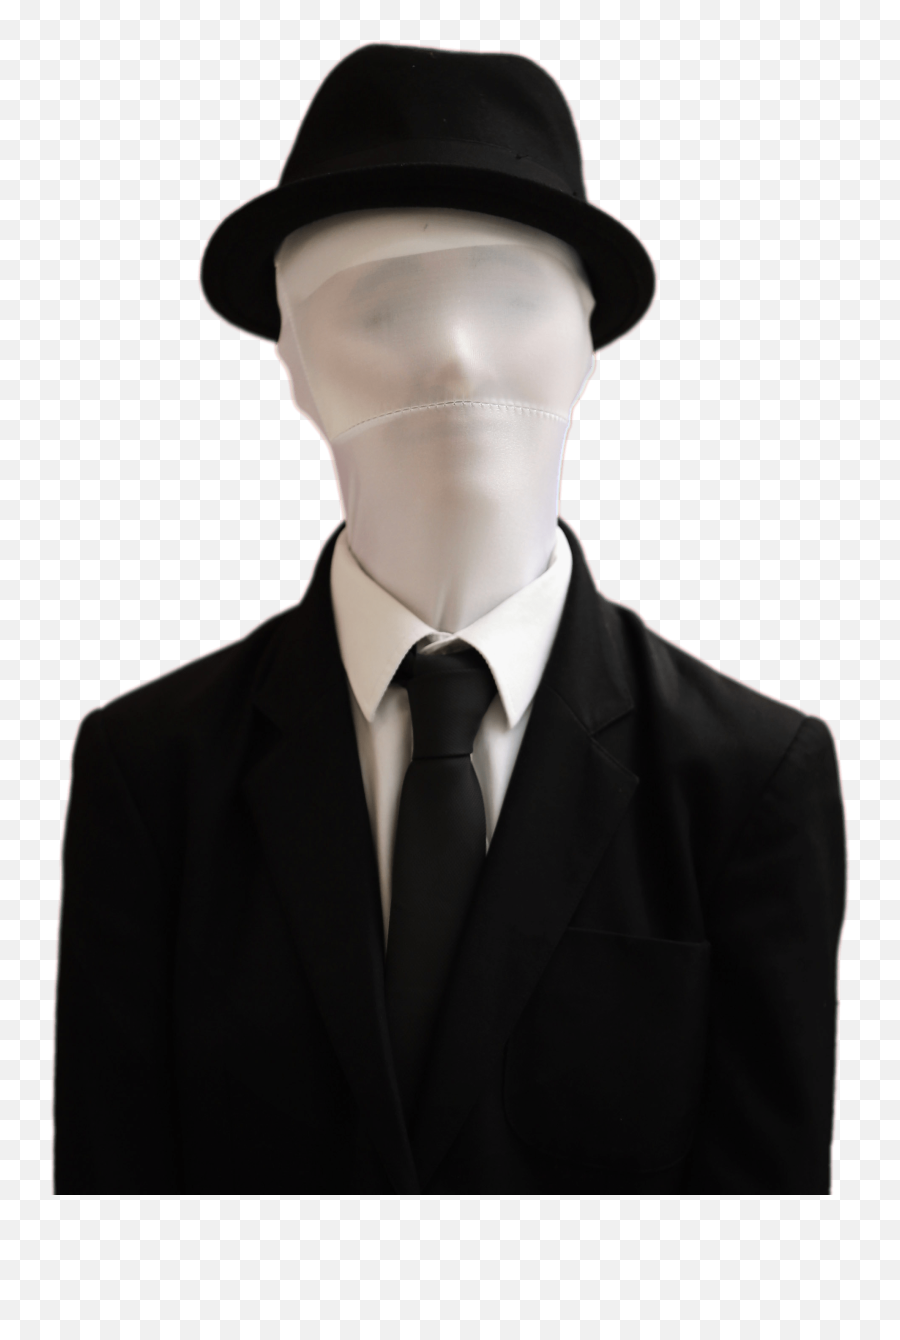 Slender Man Wearing Hat Transparent Png - Slender Man Transparent Png,Slender Man Transparent